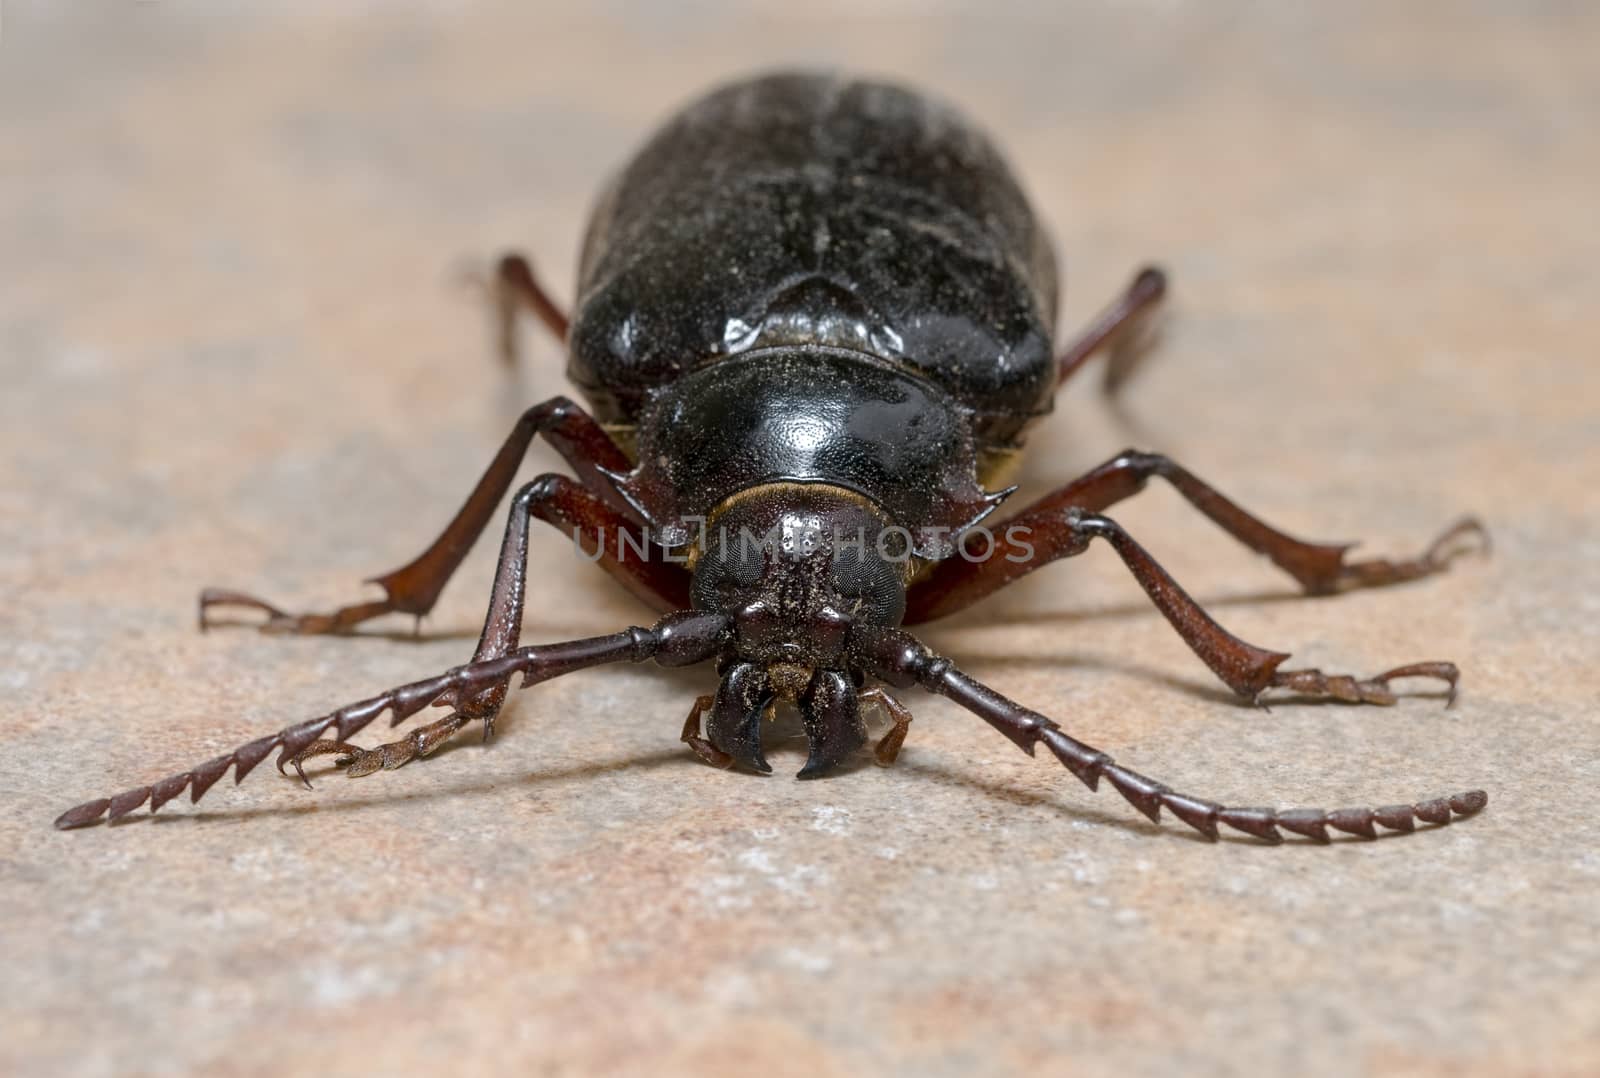 California prionus beetle (Prionus californicus) Male with conical antennae.